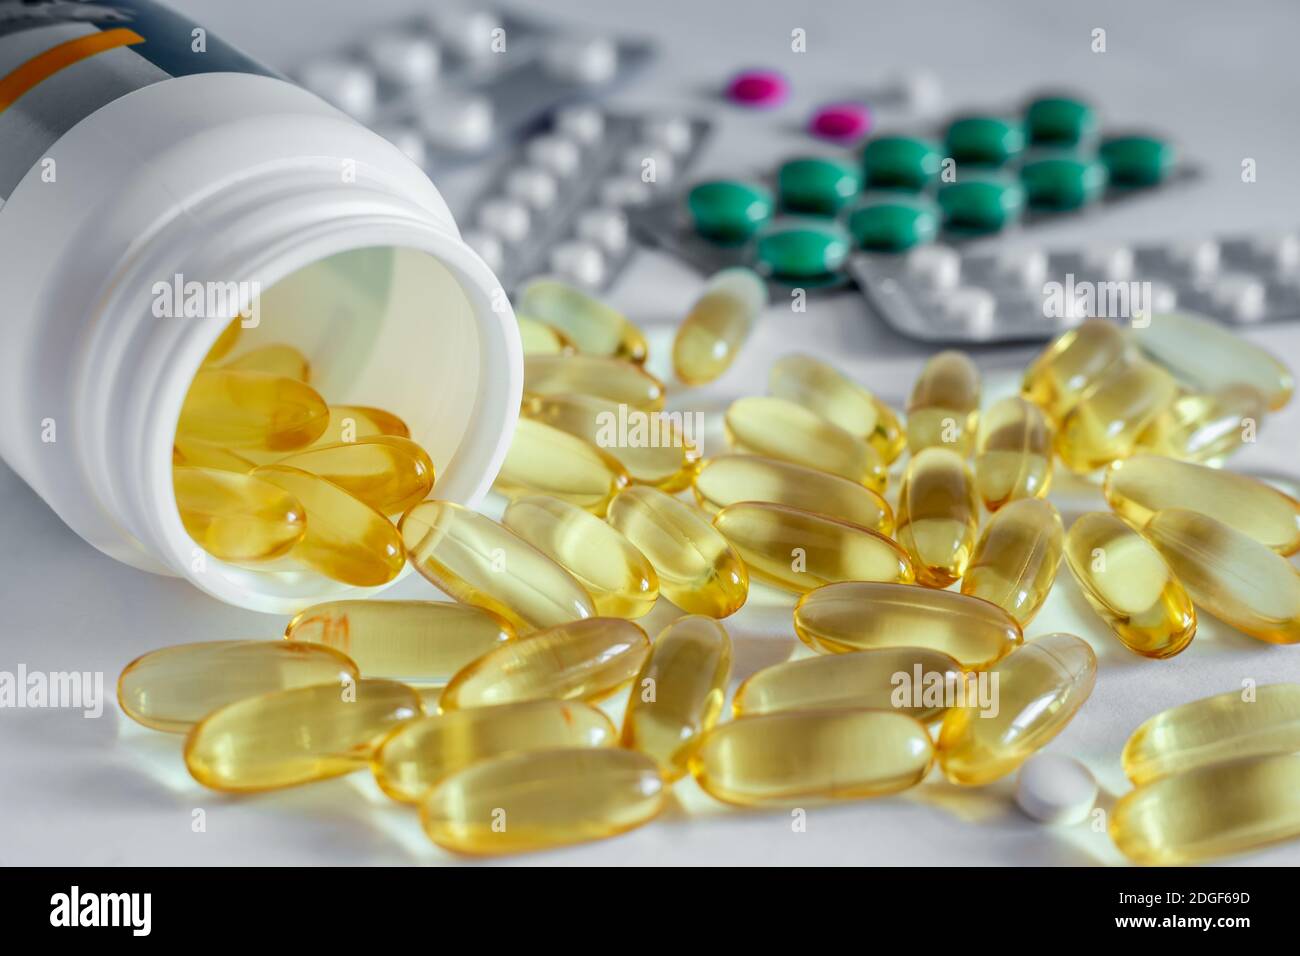 Farmacia y Medicina: diferentes tipos de formas farmacéuticas. Foto de stock